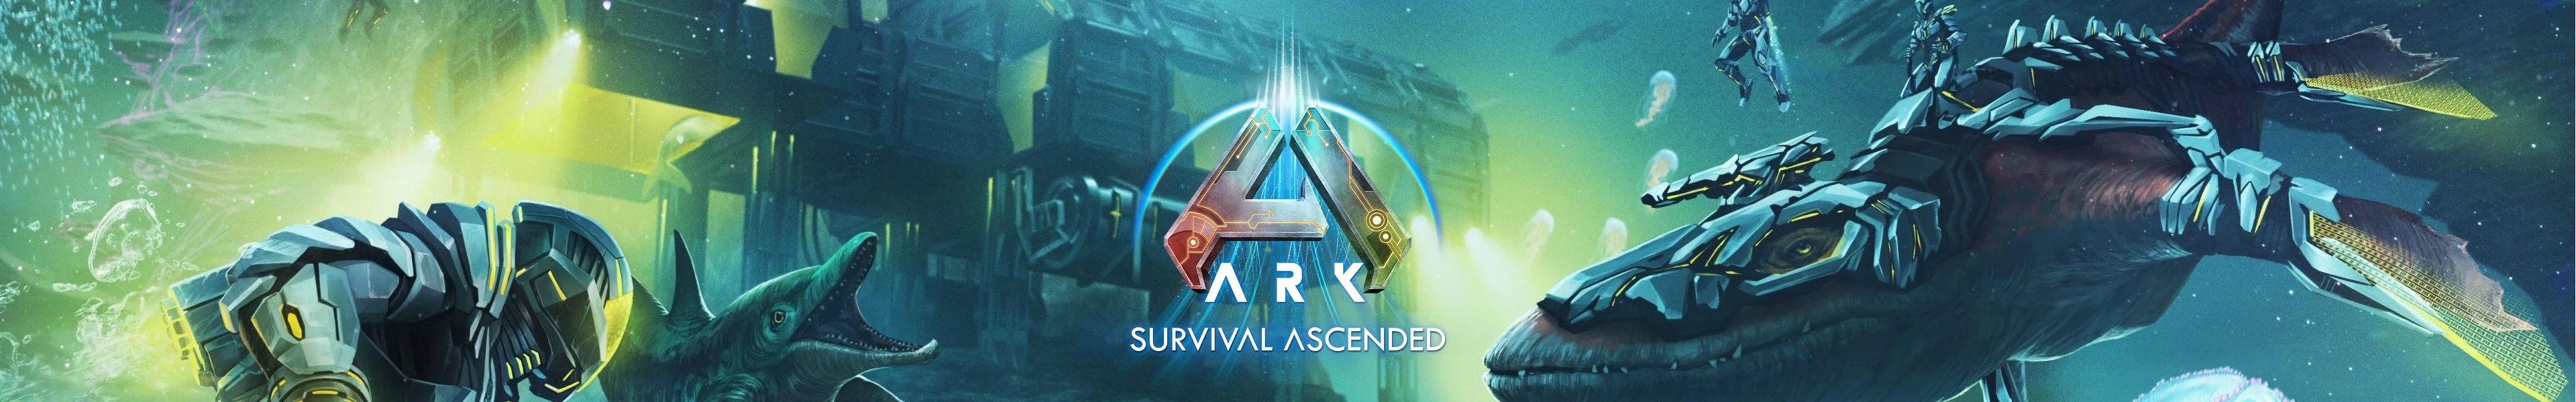 ARK: Survival Ascended Guides Banner